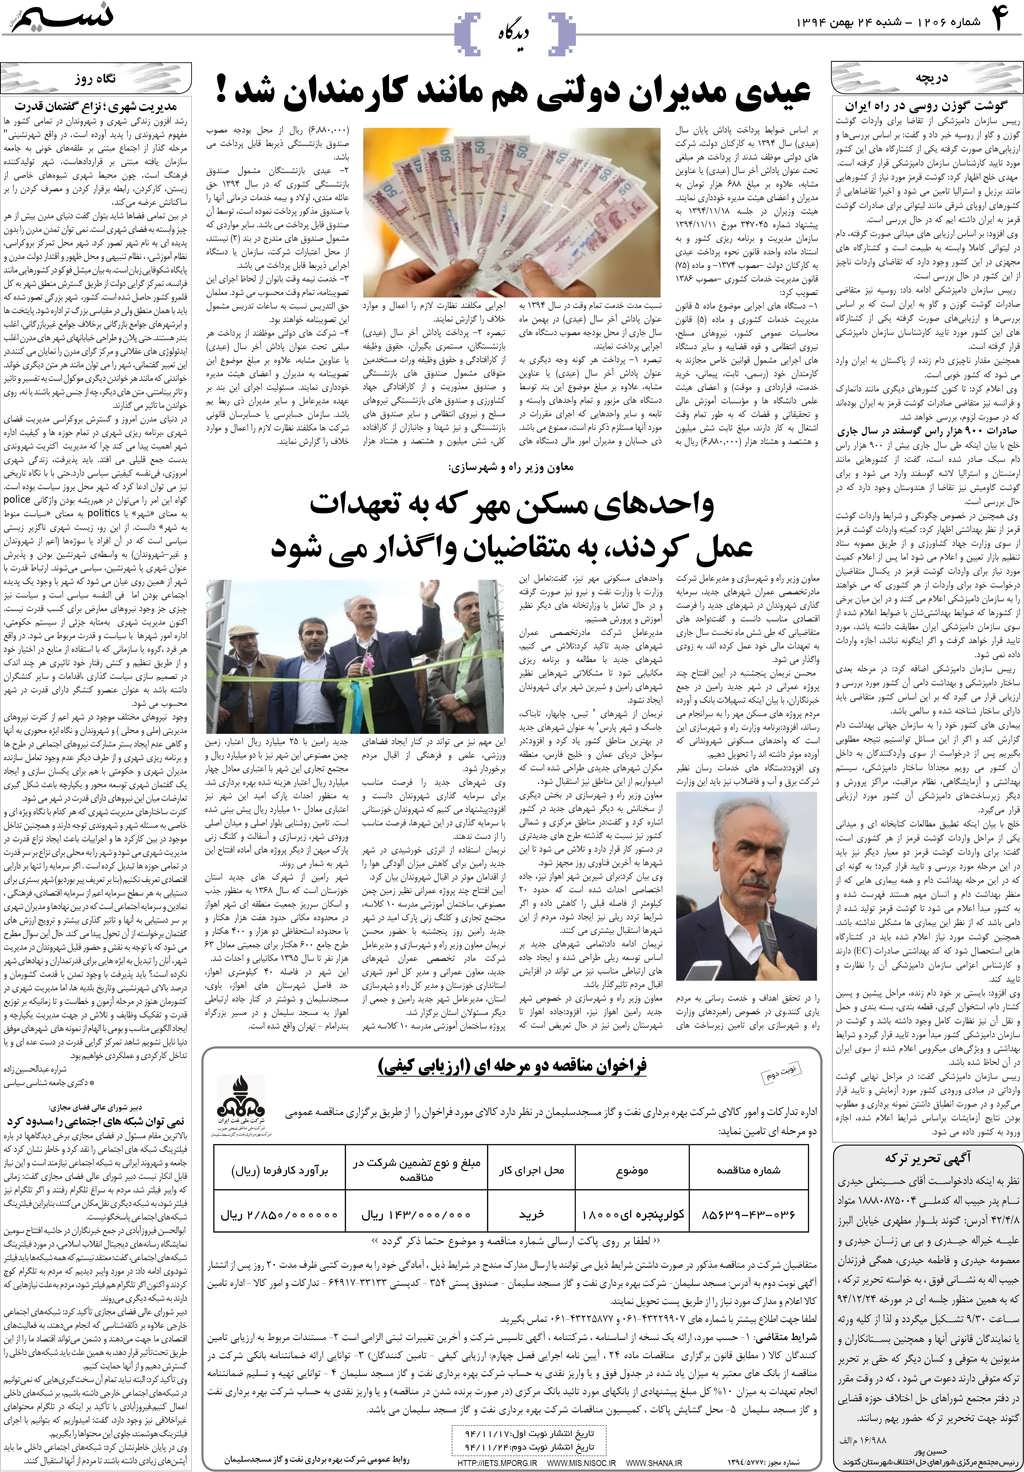 صفحه دیدگاه روزنامه نسیم شماره 1206